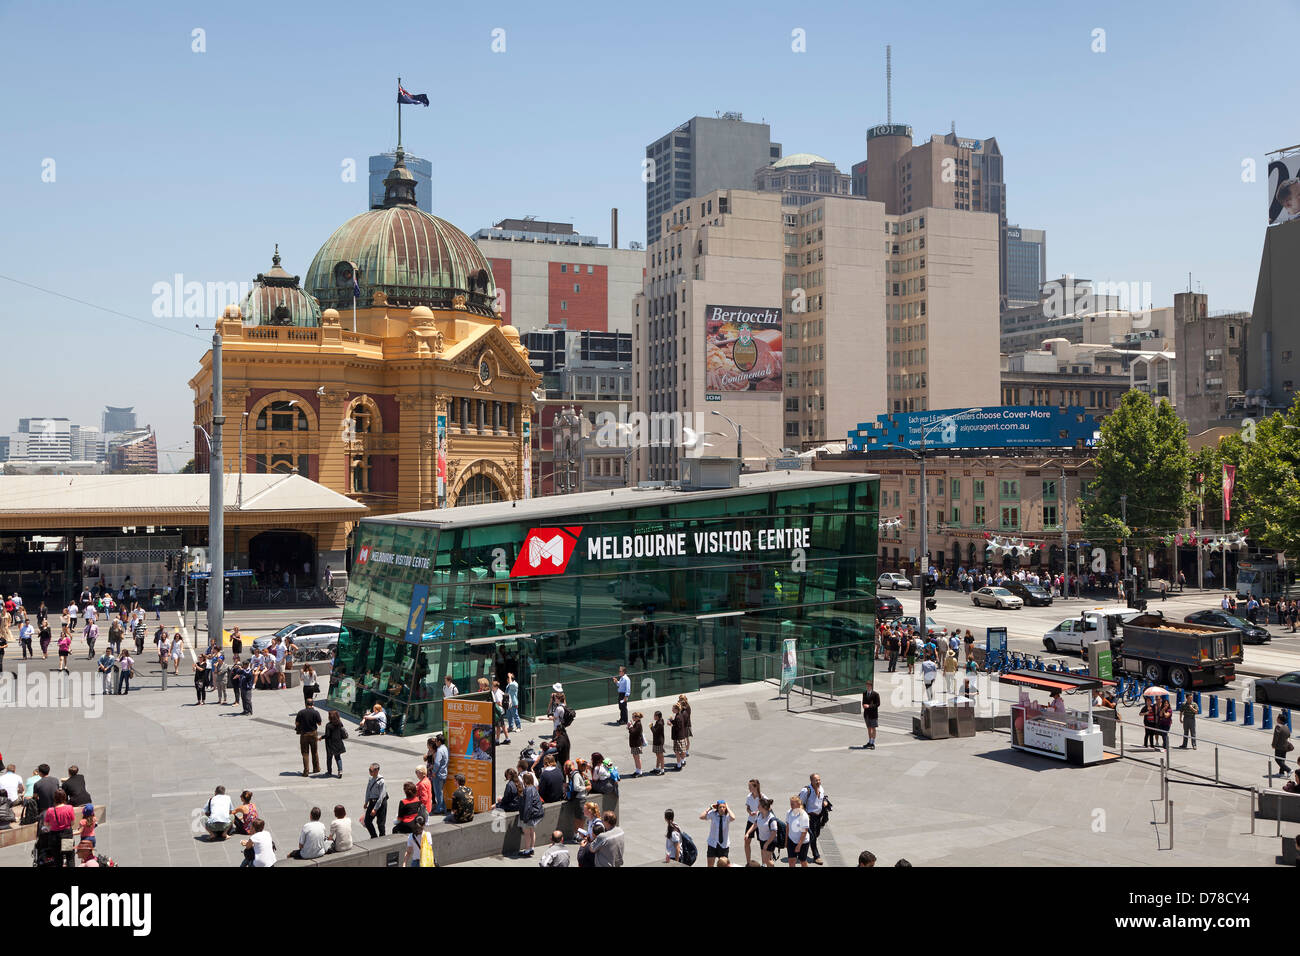 Melbourne visitor centre at Federation Square, Victoria, Australia Stock Photo